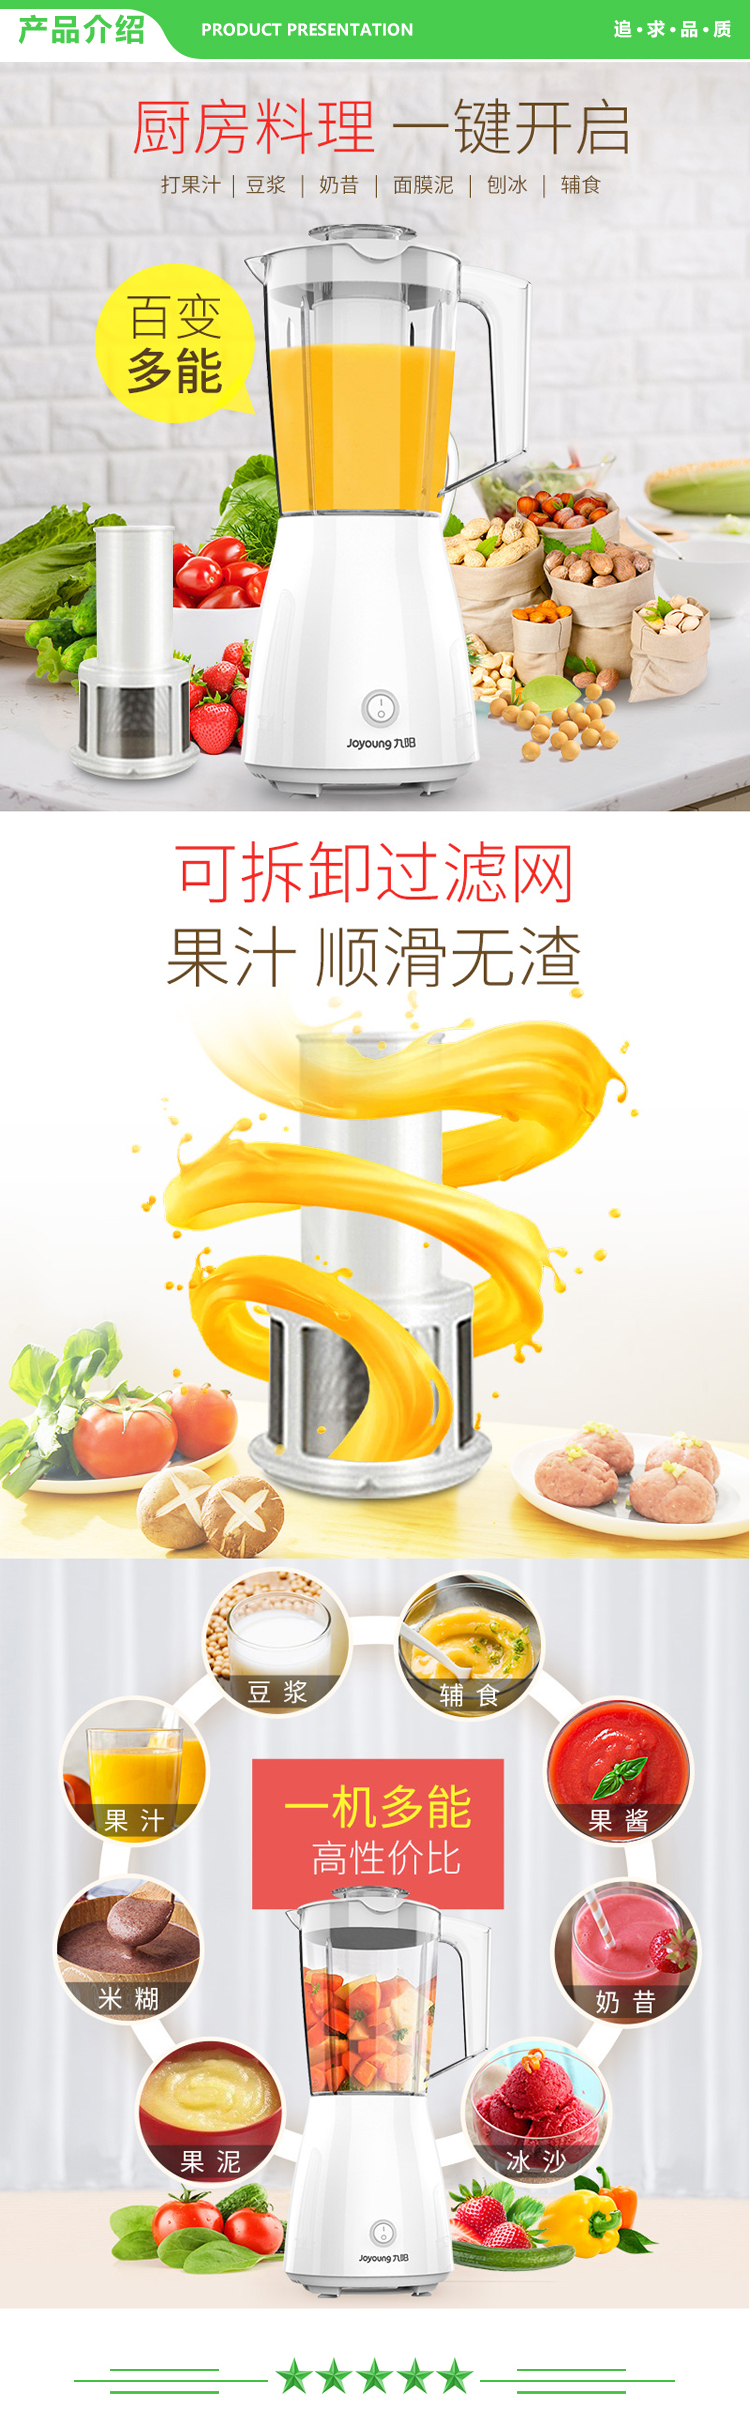 九阳 Joyoung JYL-C16D 榨汁机 浆机多功能果蔬榨汁机搅拌机料理机 升级款.jpg